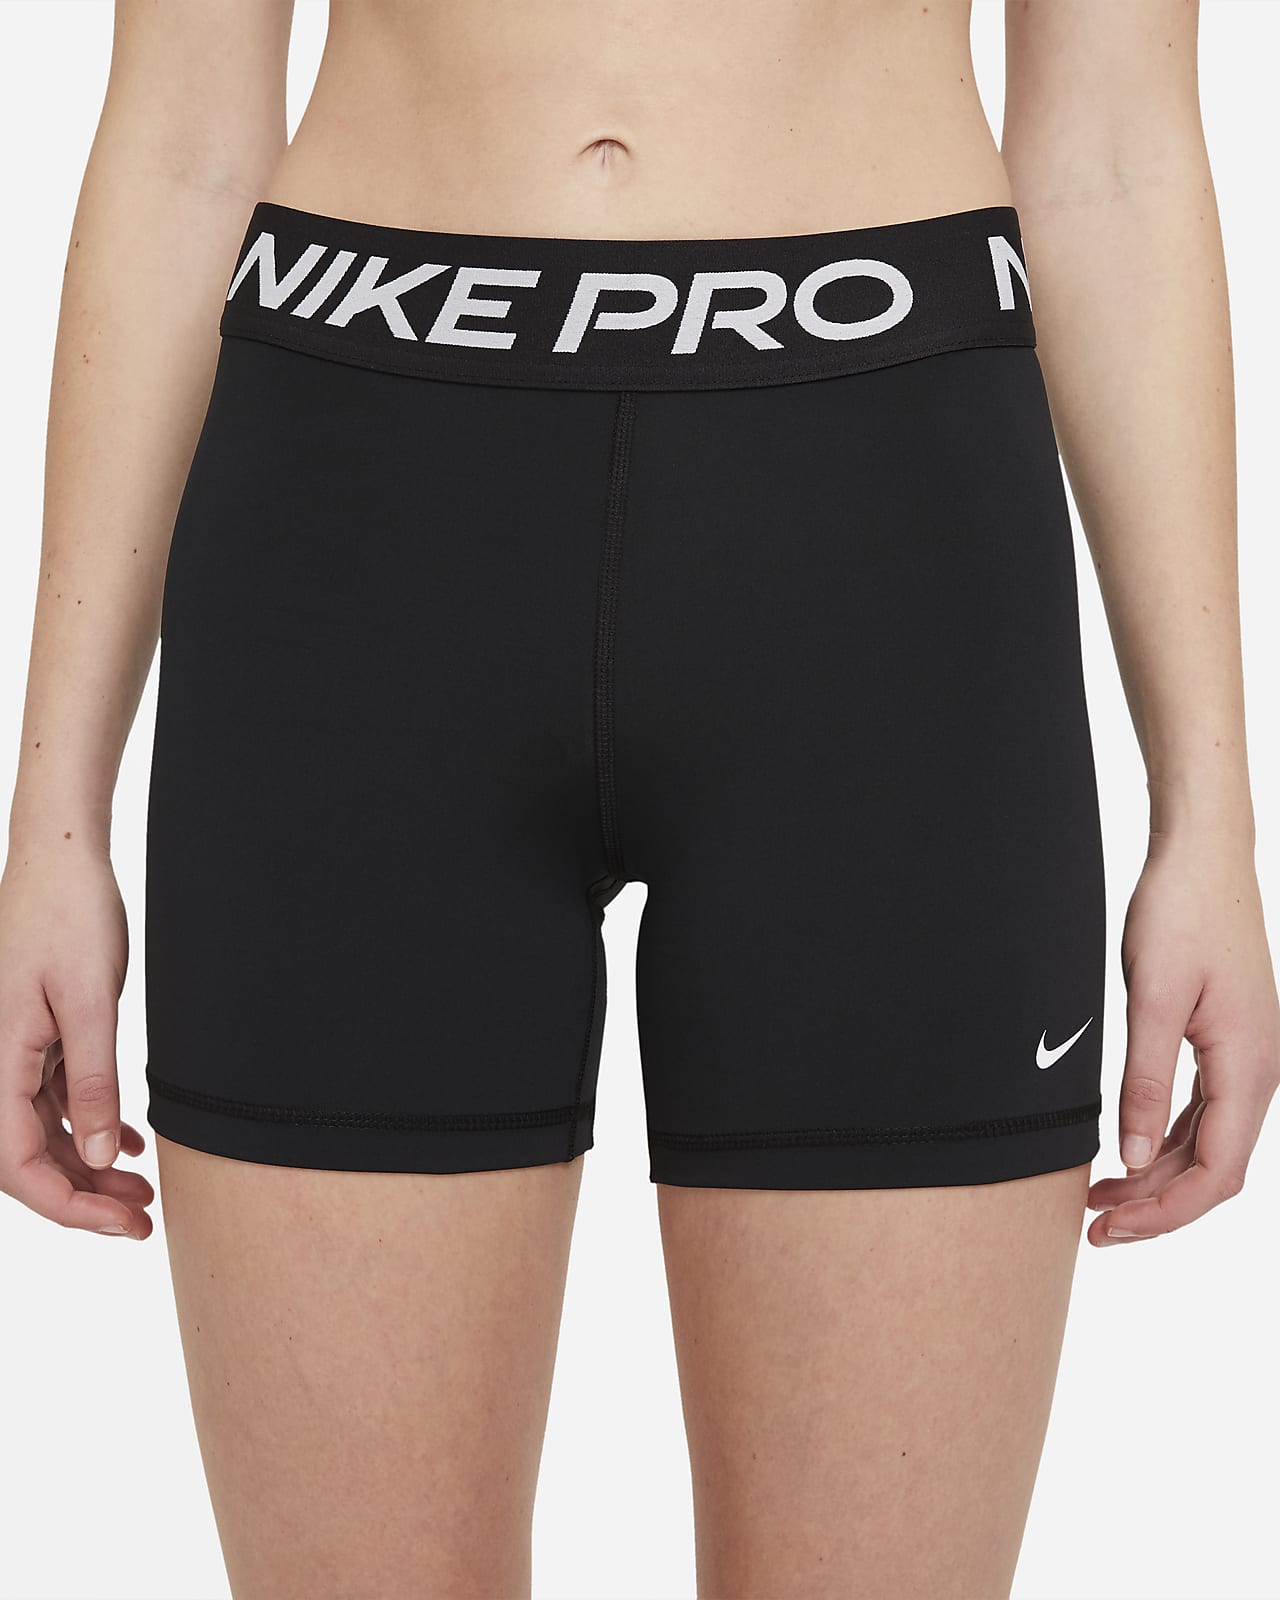 nike pro shorts women's 5 inch